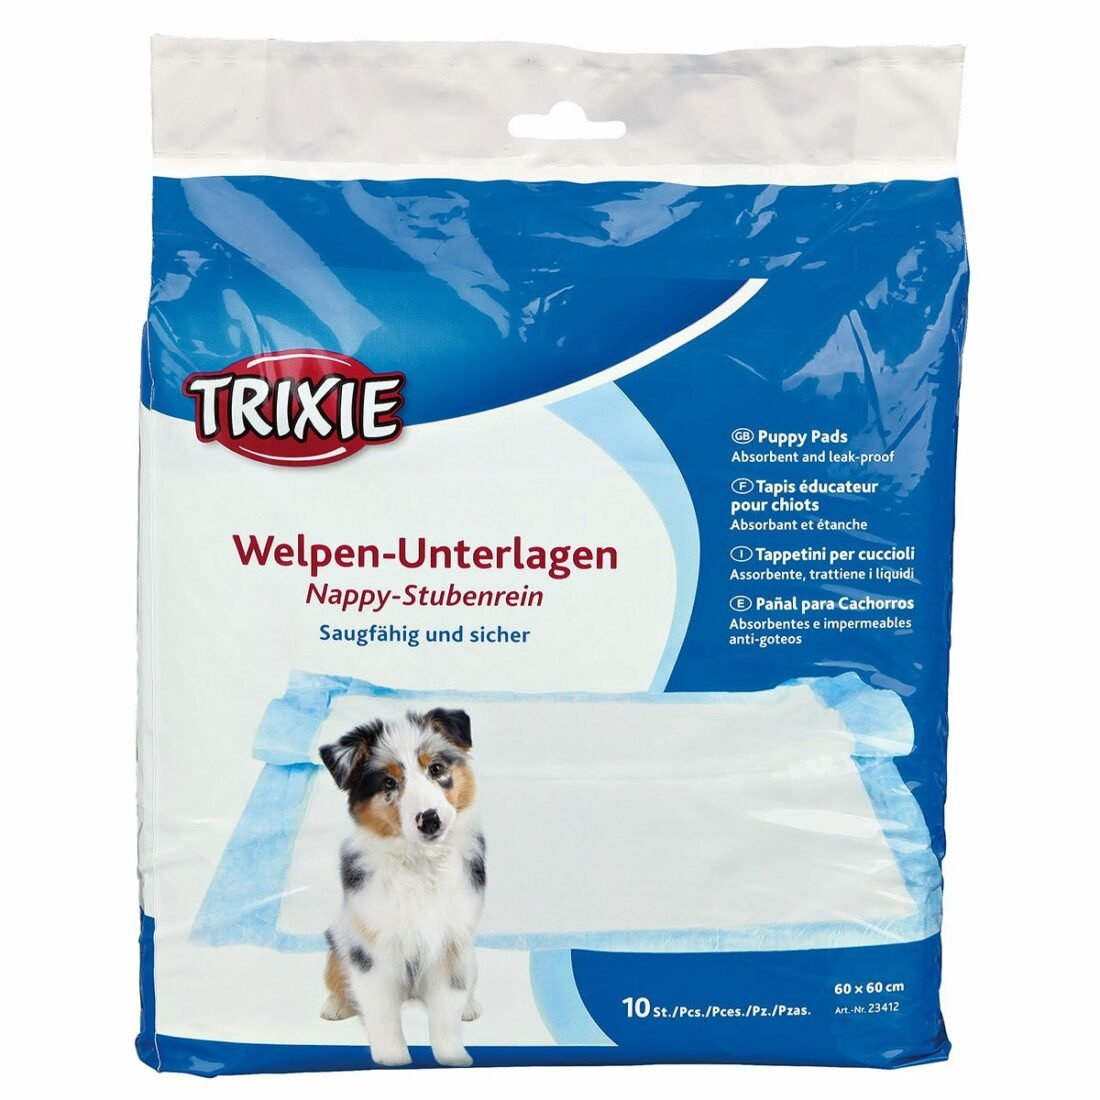 Trixie Welpen-Unterlage Nappy-Stubenrein podložka pro štěňata 60 ×